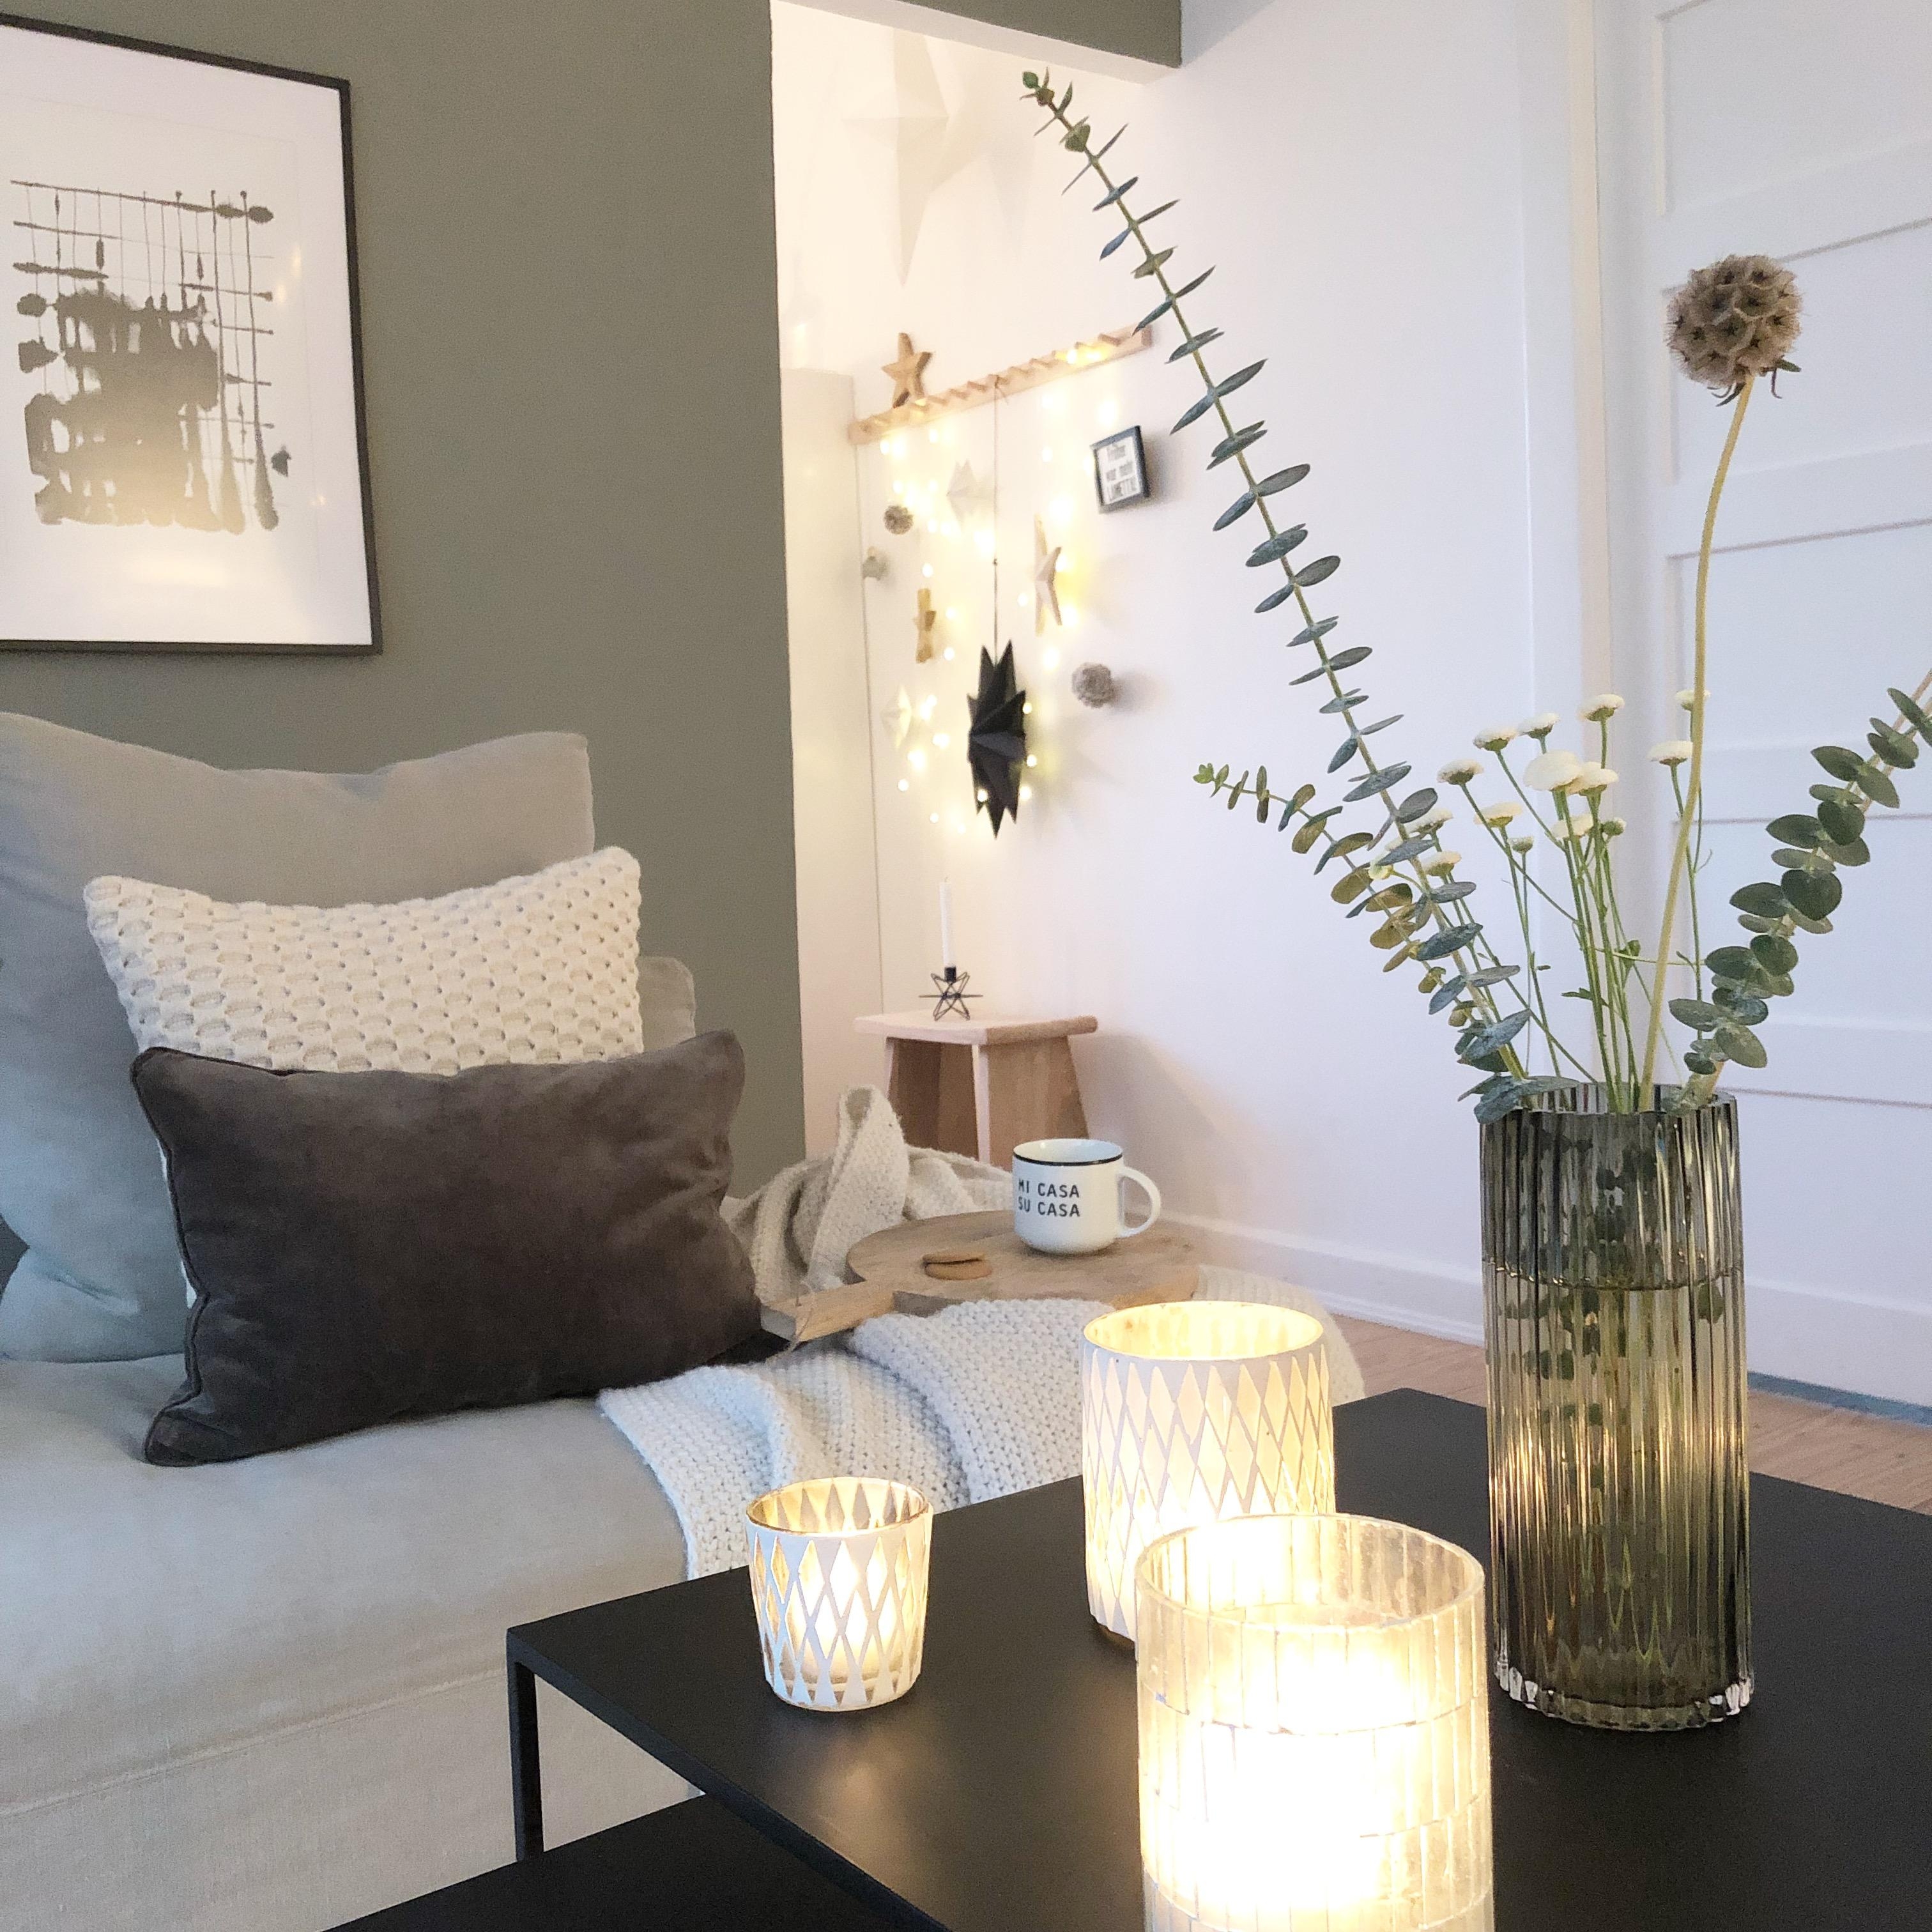 #minimalistisch #scandinavisch #wohnzimmer #Sterne #lichterketten #cozy

Einfach Hygge ! 